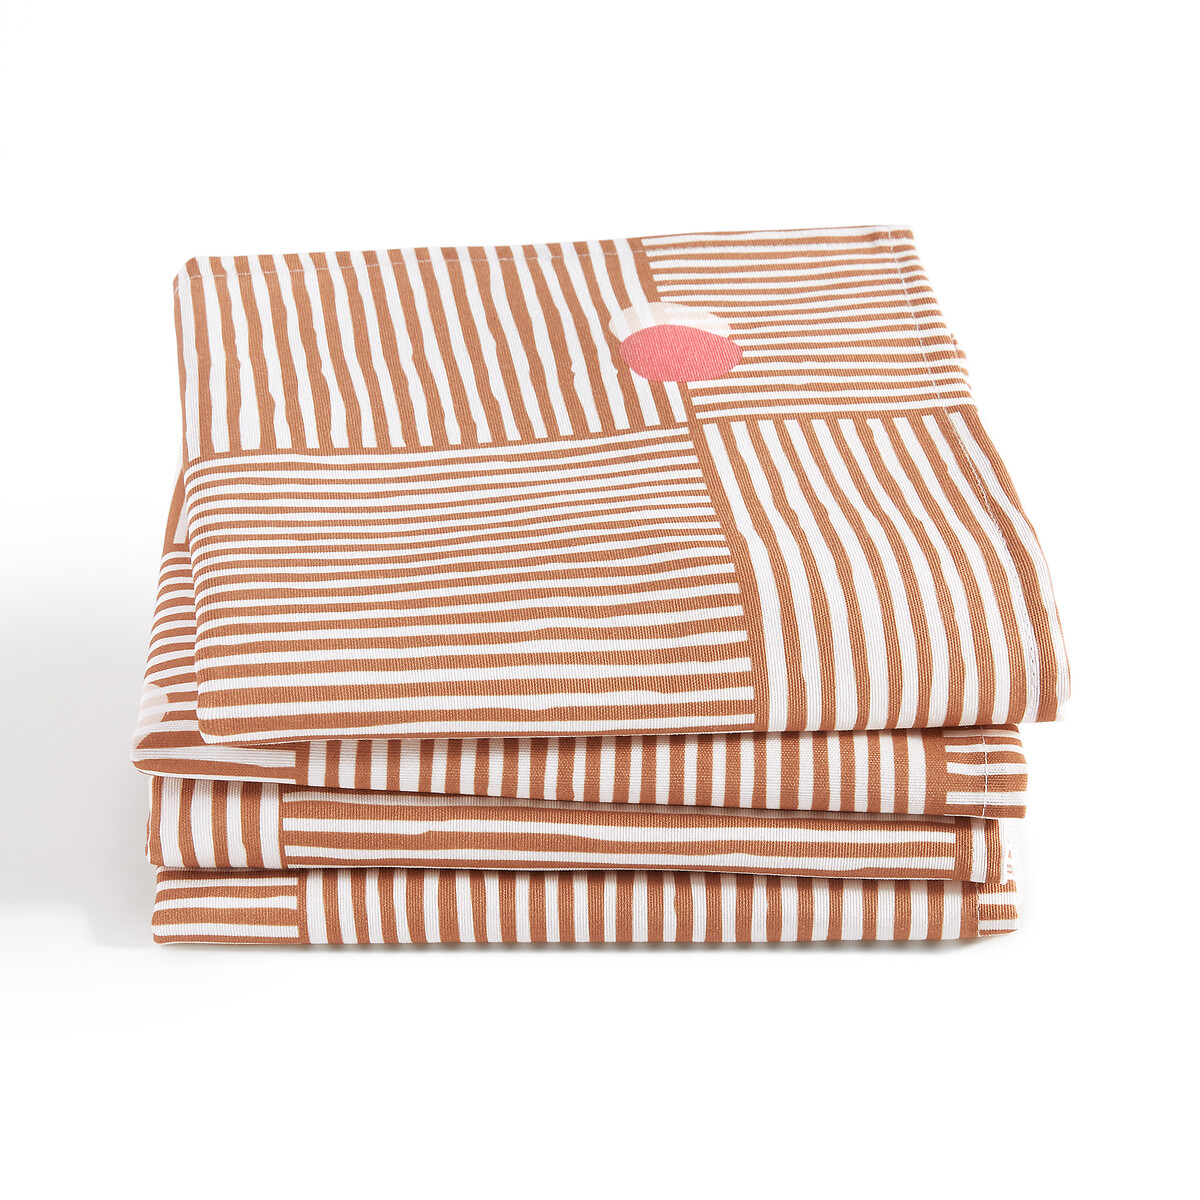 Комплект из четырех столовых салфеток LA REDOUTE INTERIEURS Из поликоттона Haria 45 x 45 см оранжевый, размер 45 x 45 см